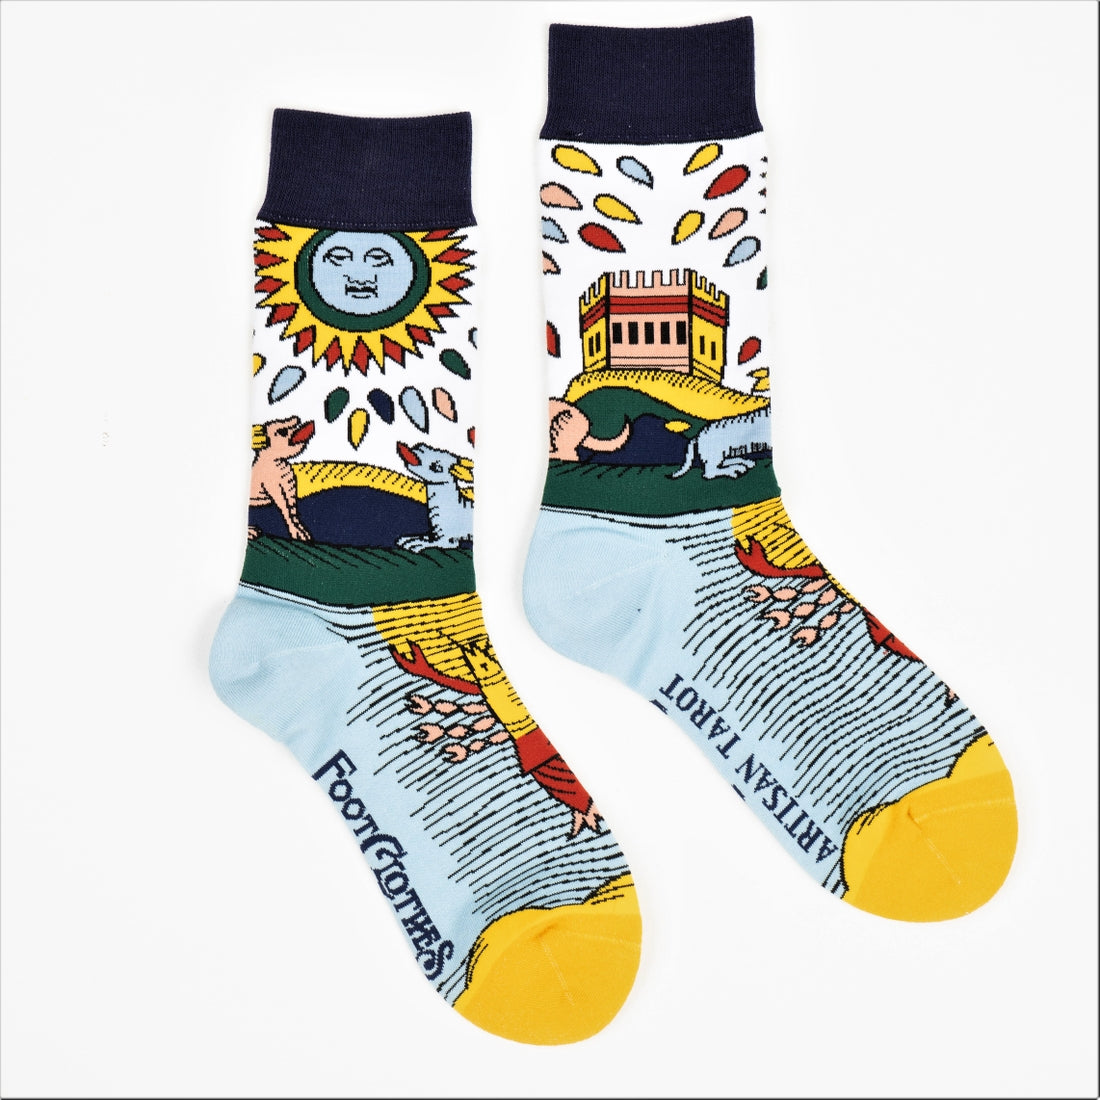 Awesome Mystical Printed Socks